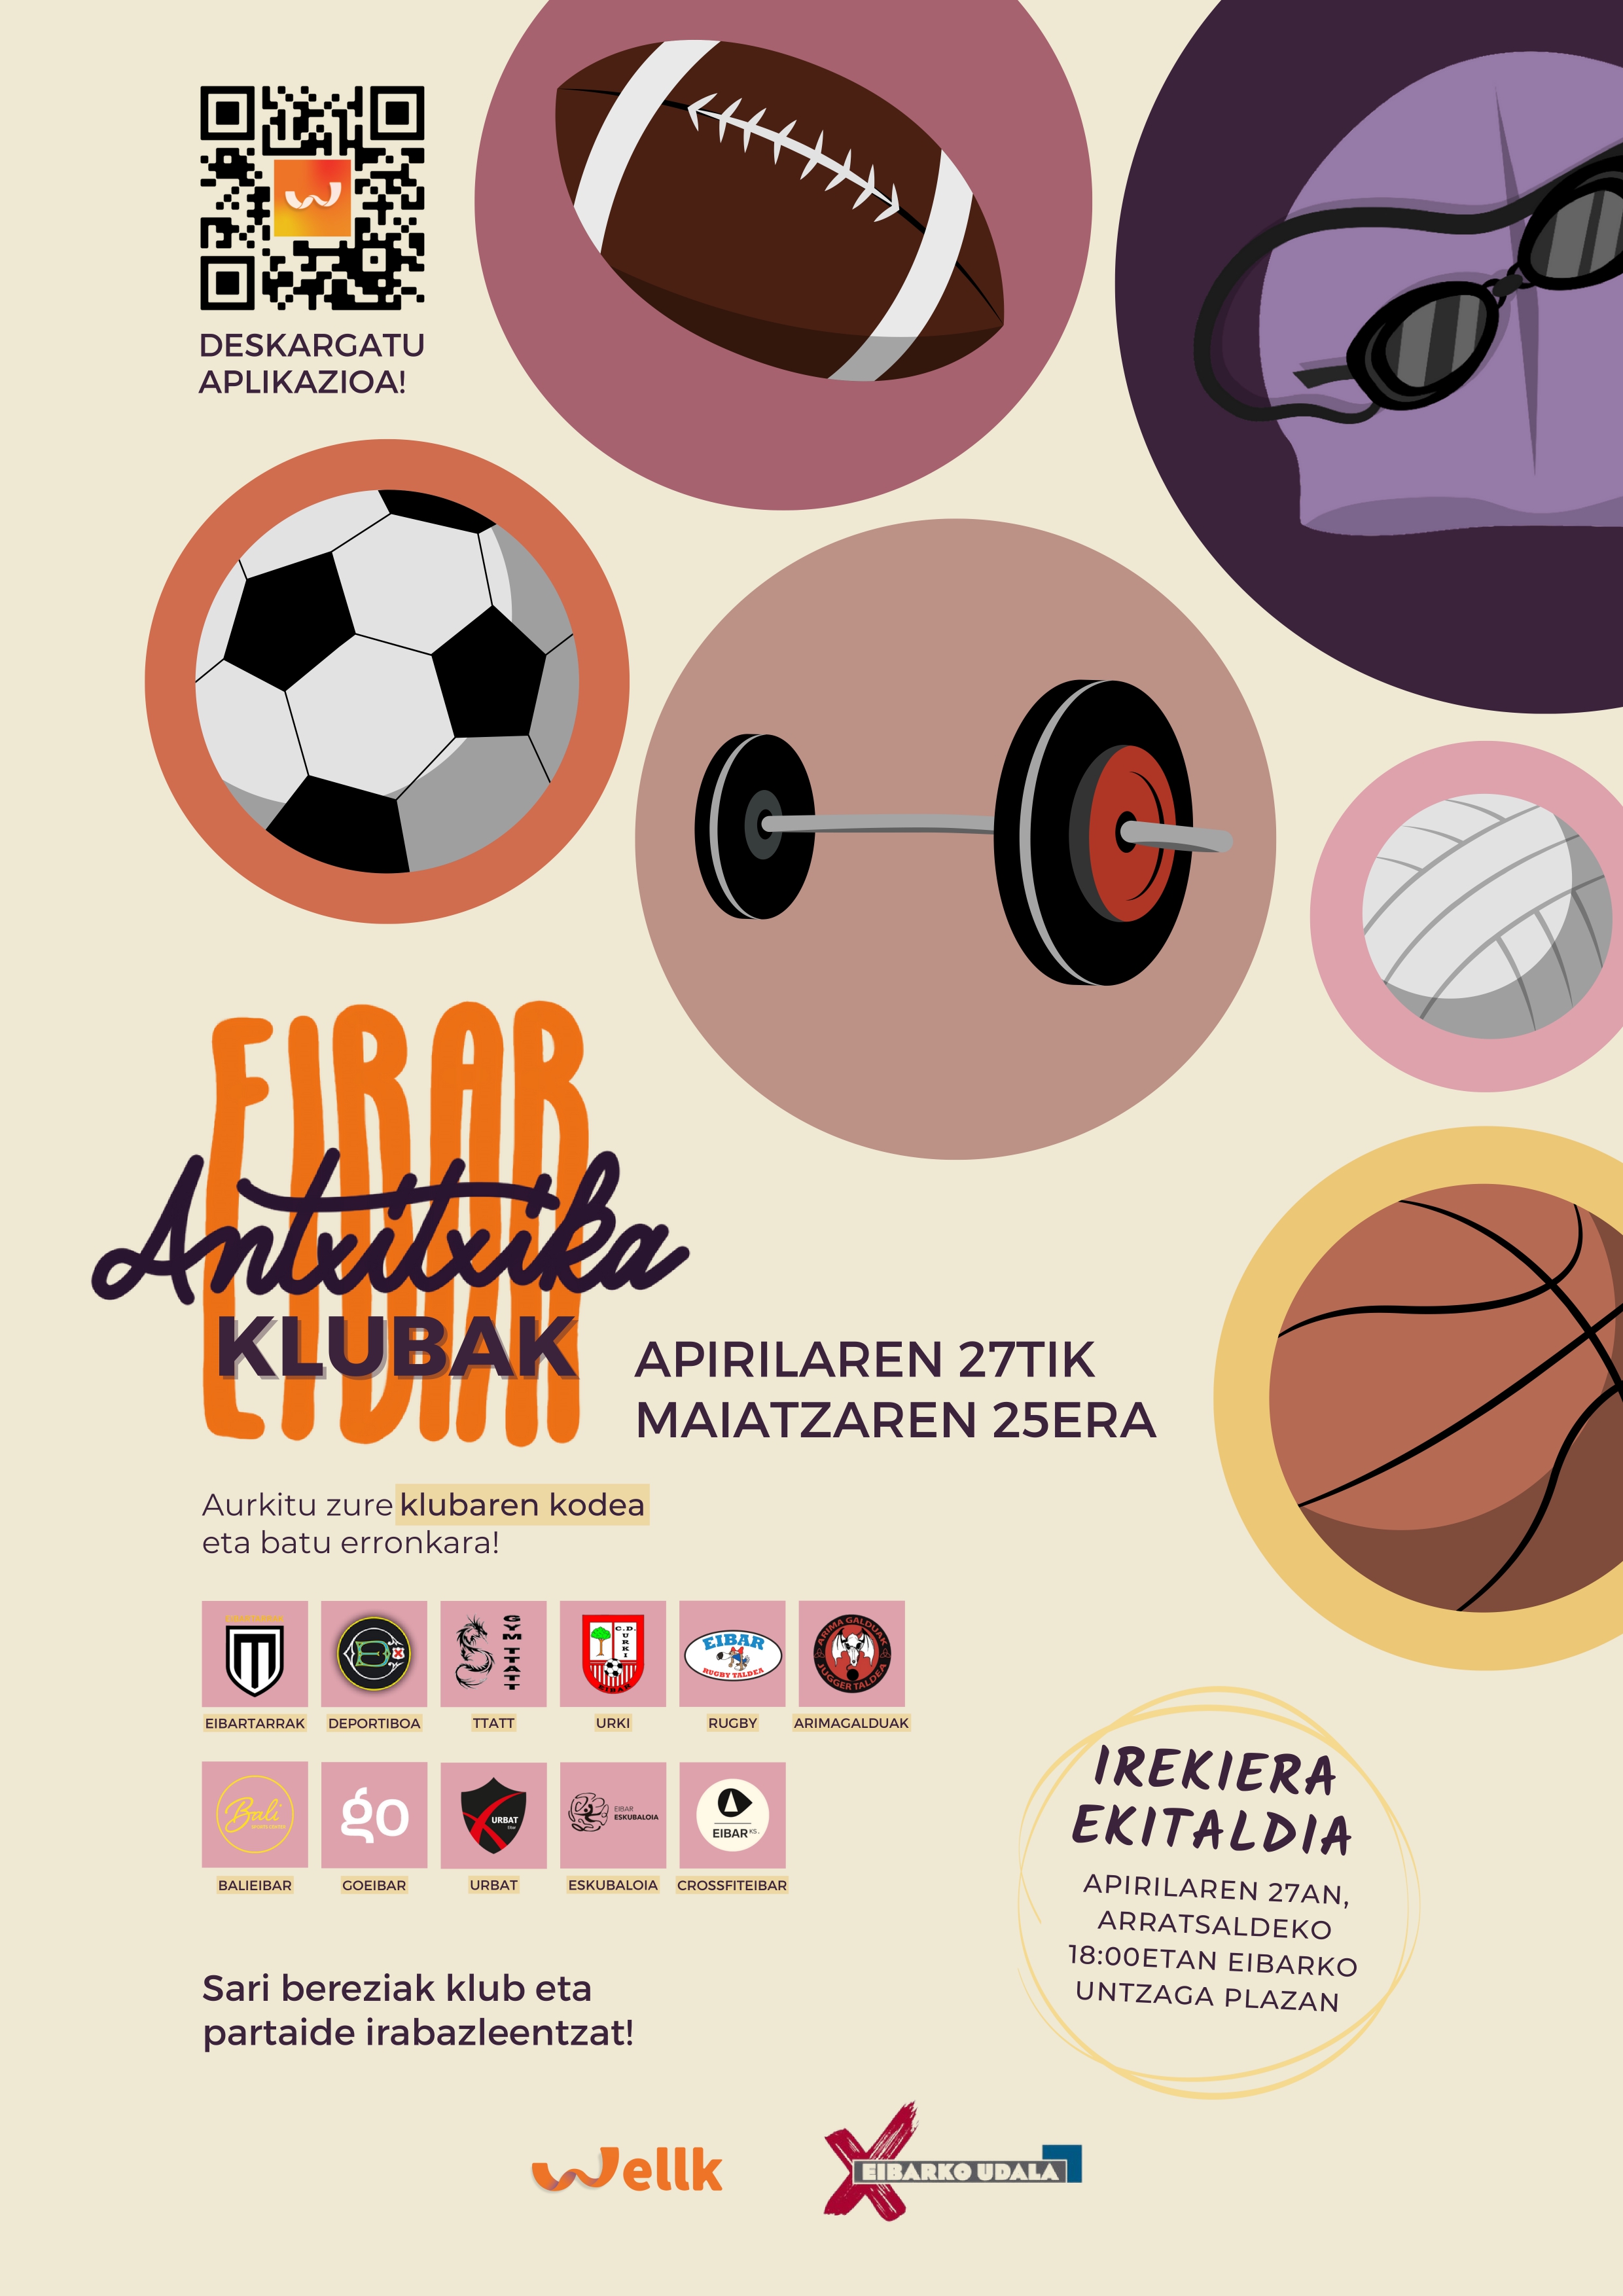 El Ayuntamiento lanza el reto 'Antxitxika Eibar: Klubak' mediante la app Wellk